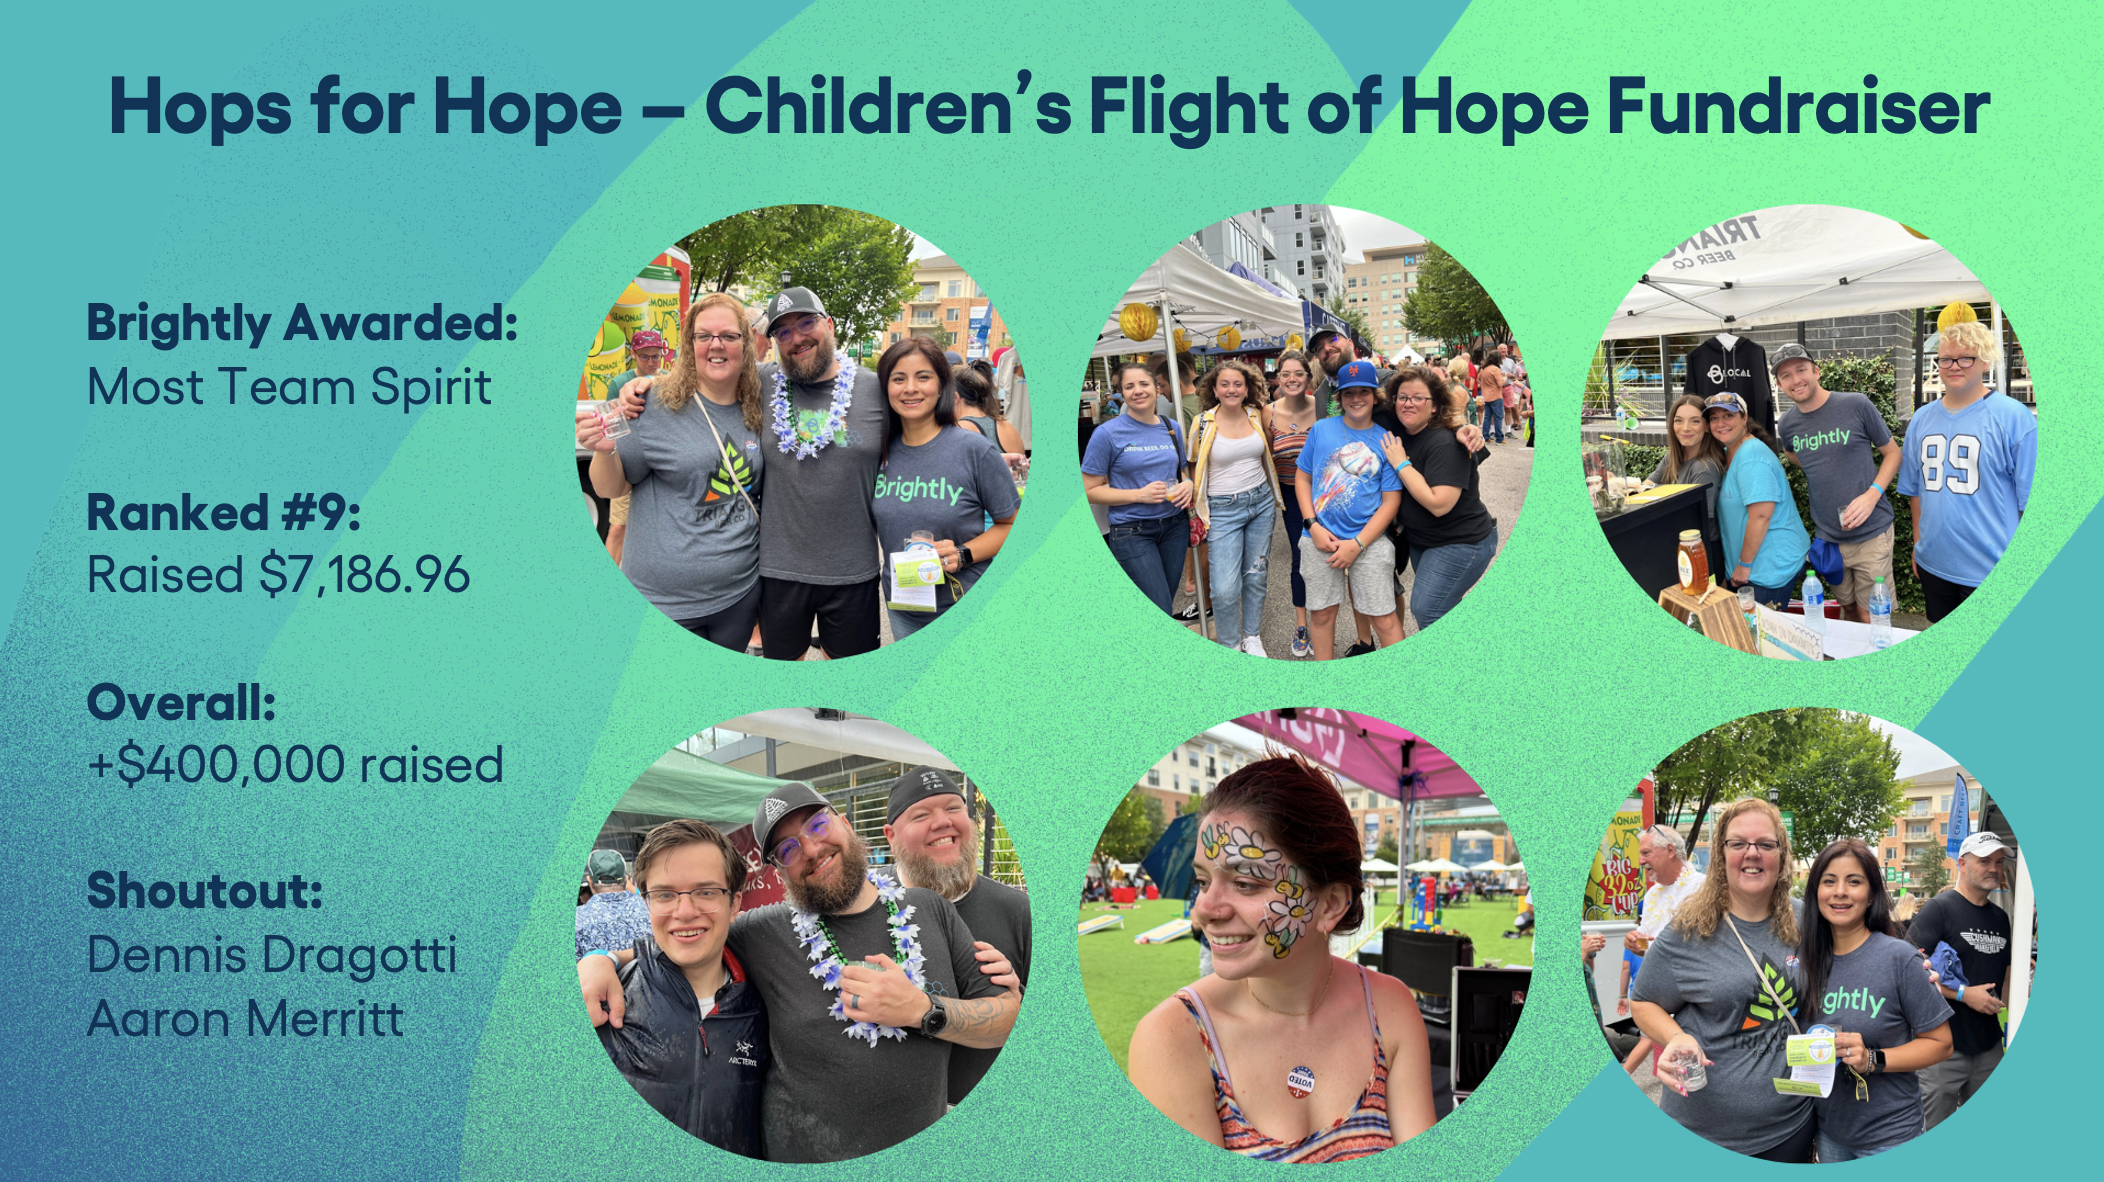 Hops for Hope - Children's Flight of Hope Fundraiser Promotion